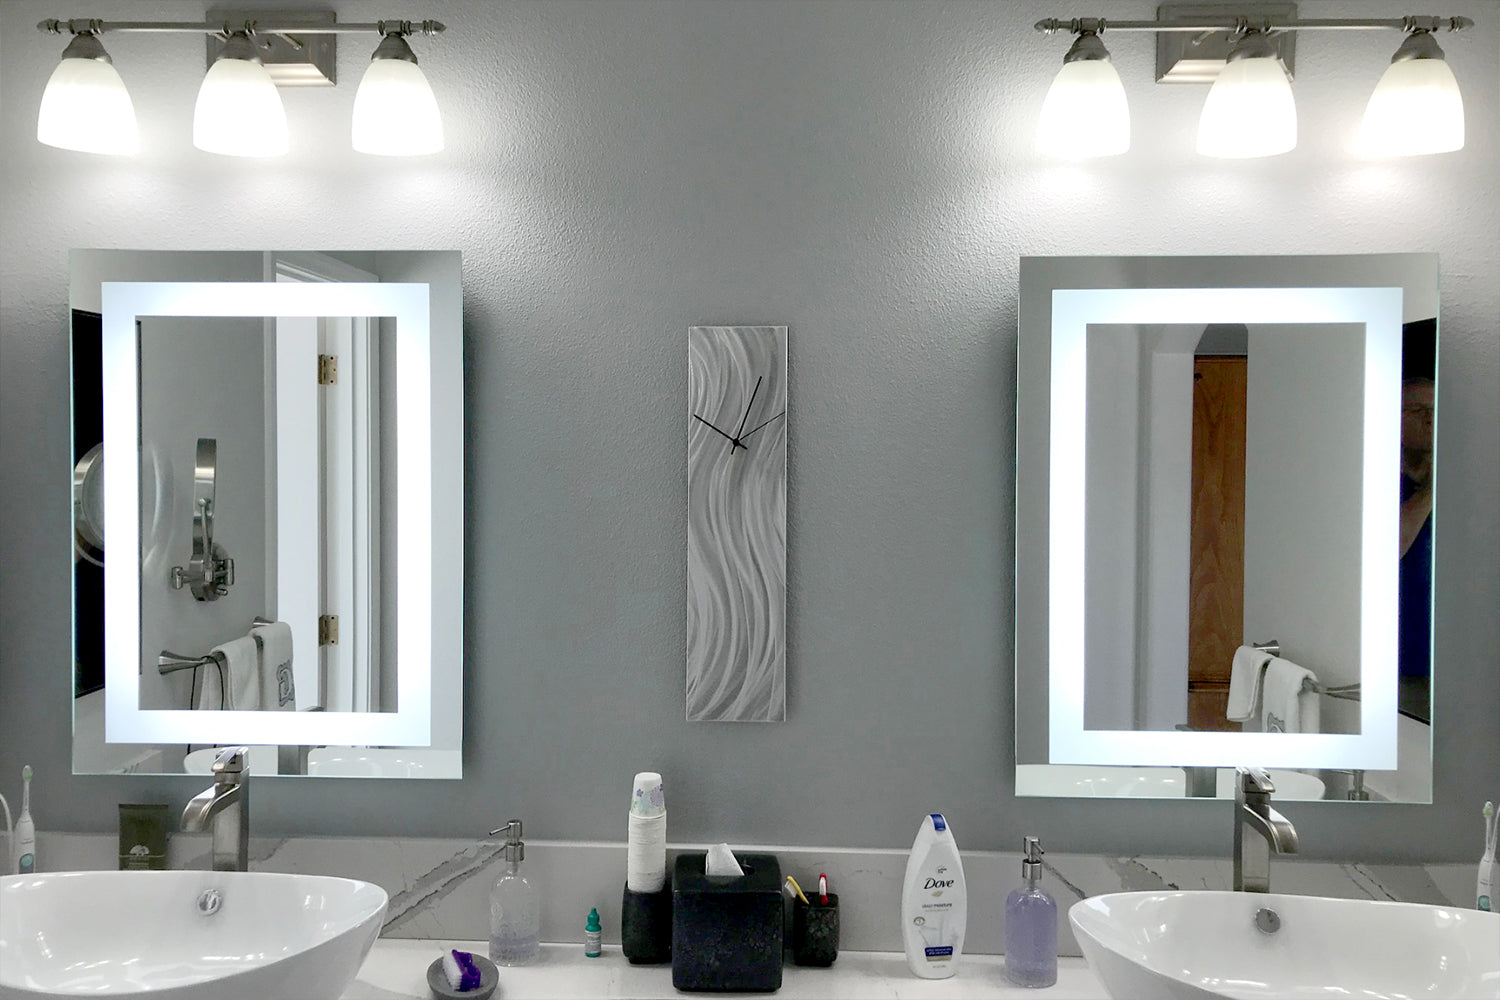 Bathroom Vanity Tile Mirror